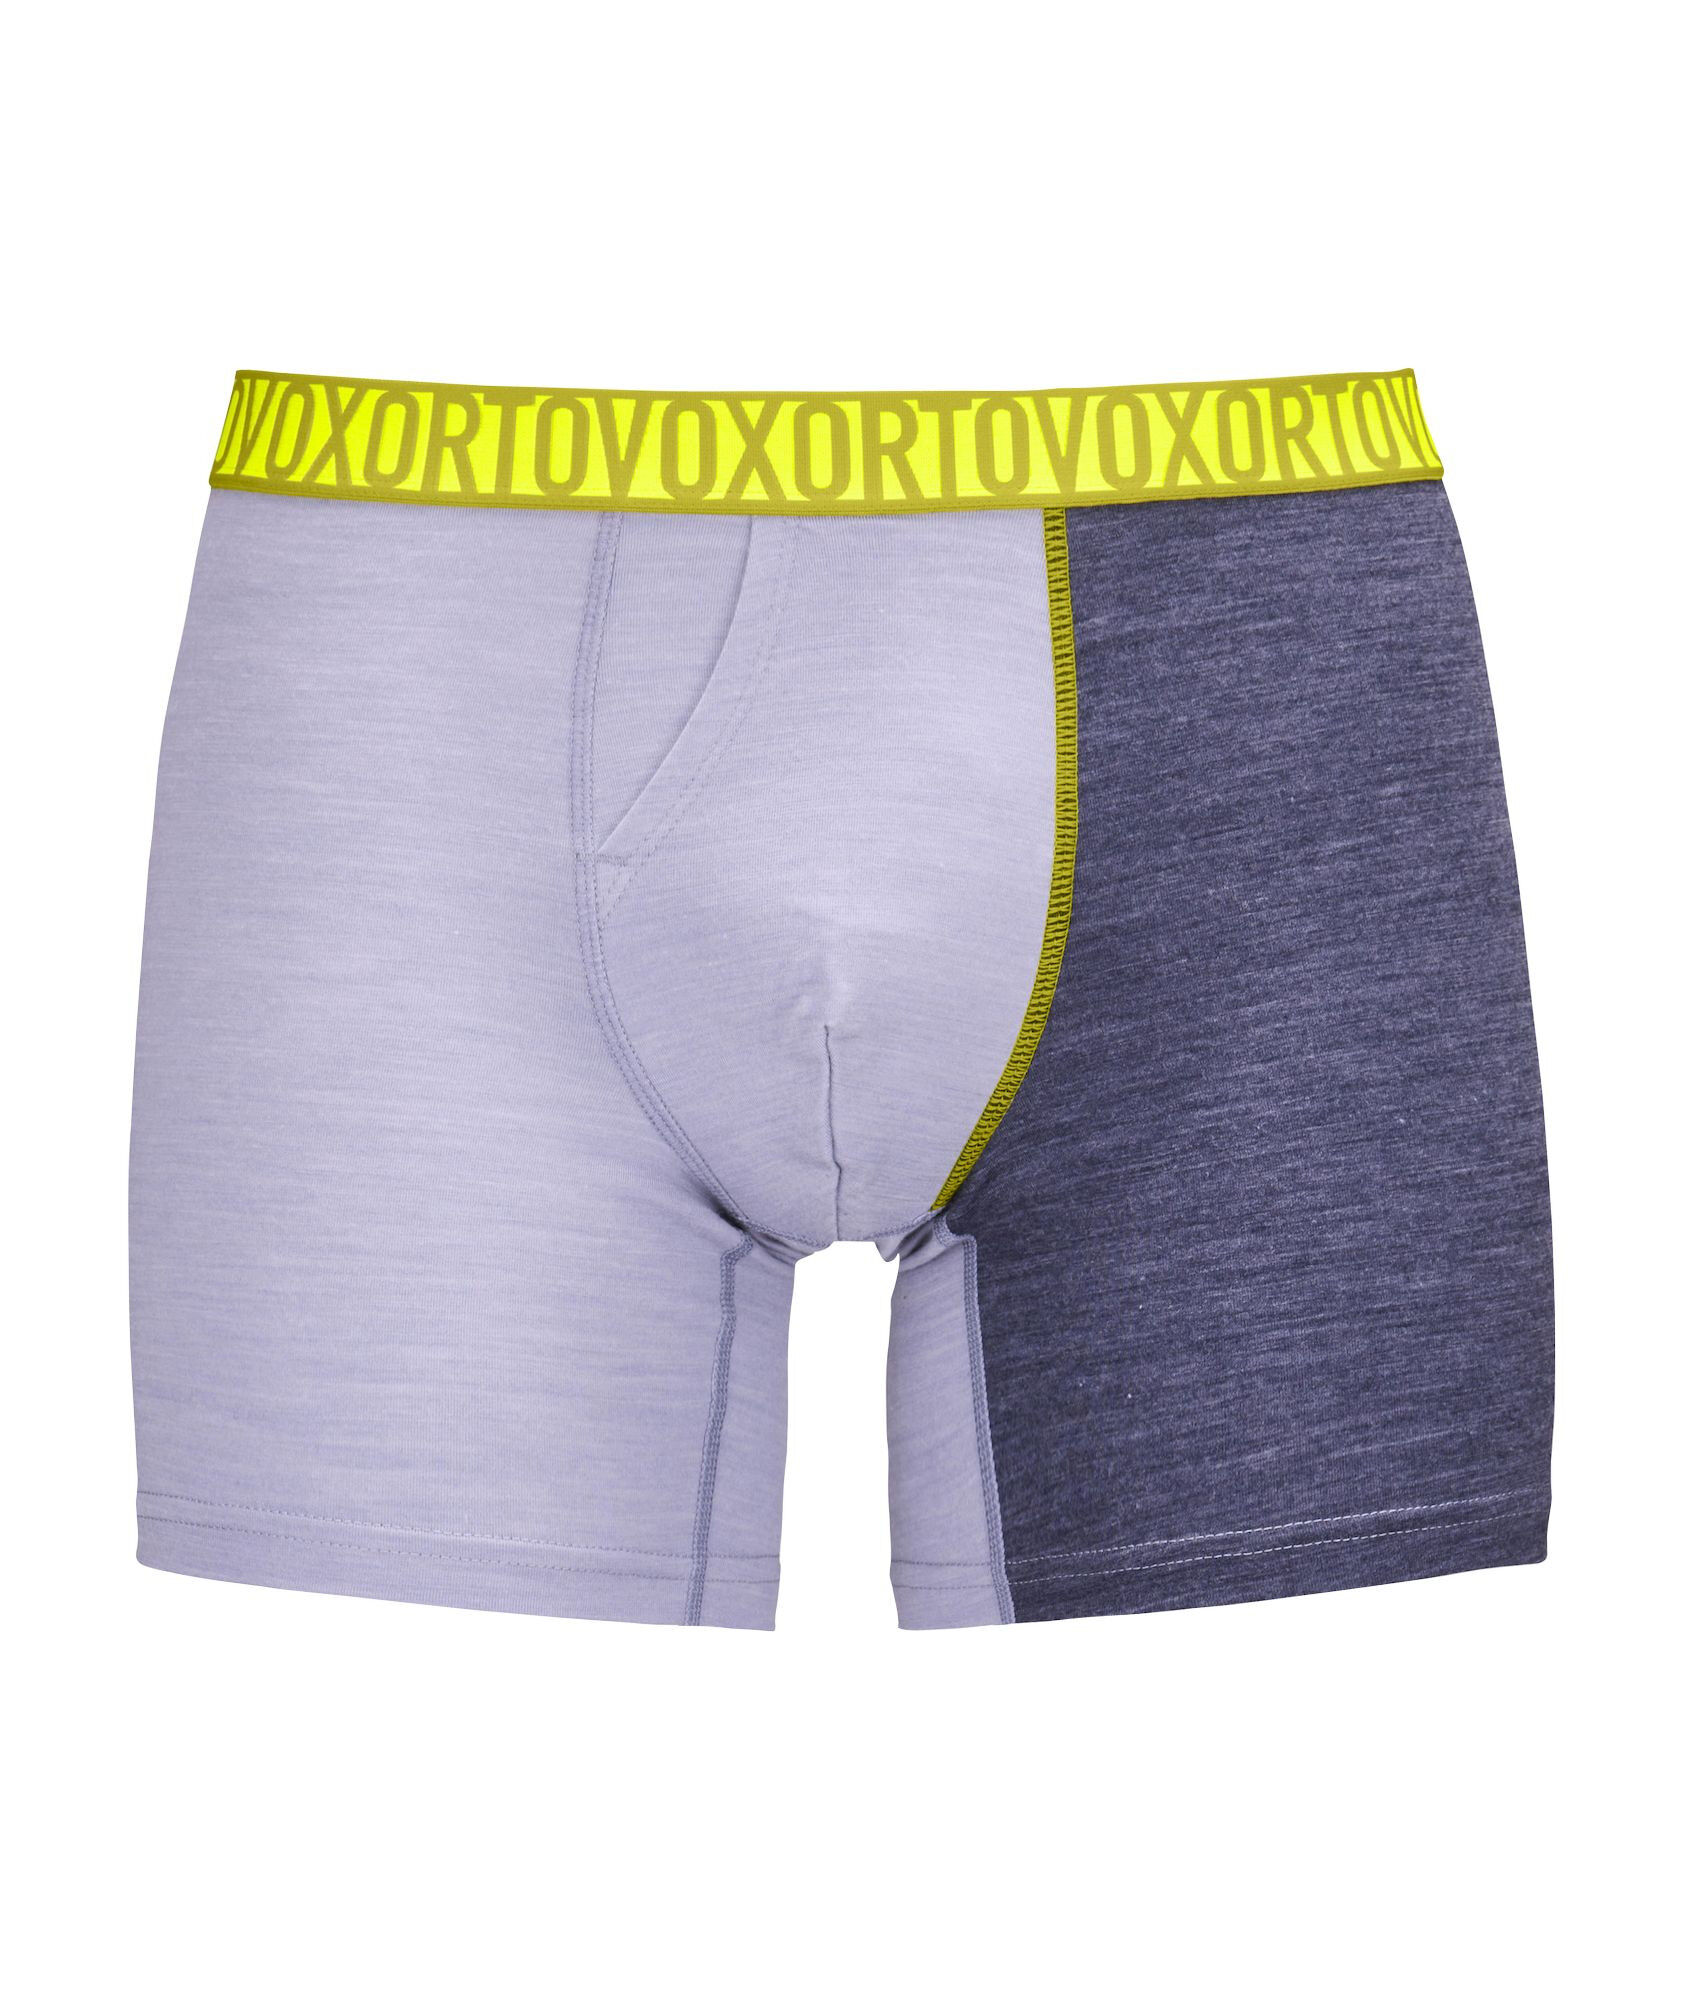 Ortovox 150 Essential Boxer Briefs - Underwear